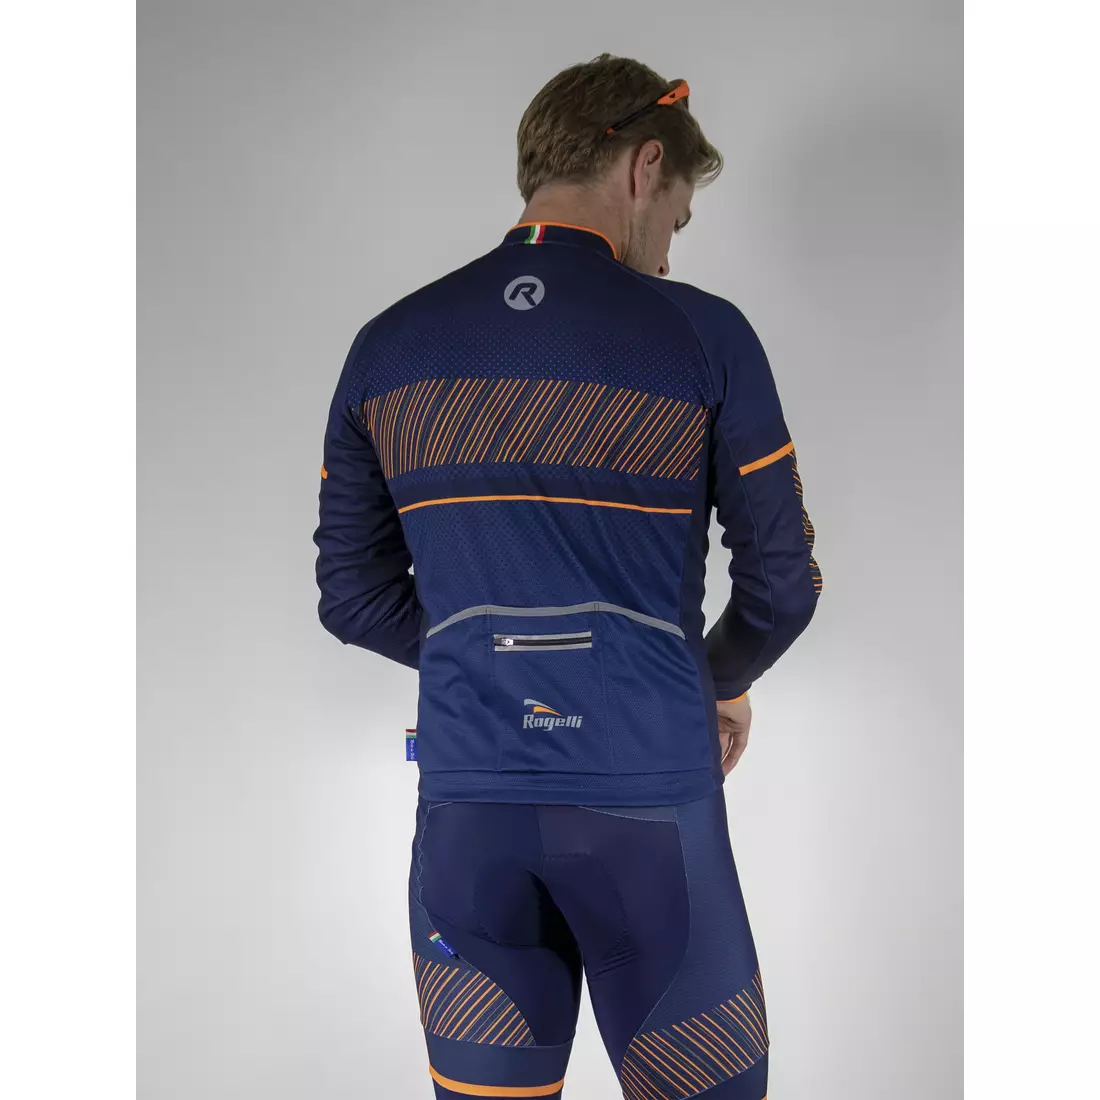 ROGELLI RITMO pánský cyklistický dres, tmavě modro-oranžový